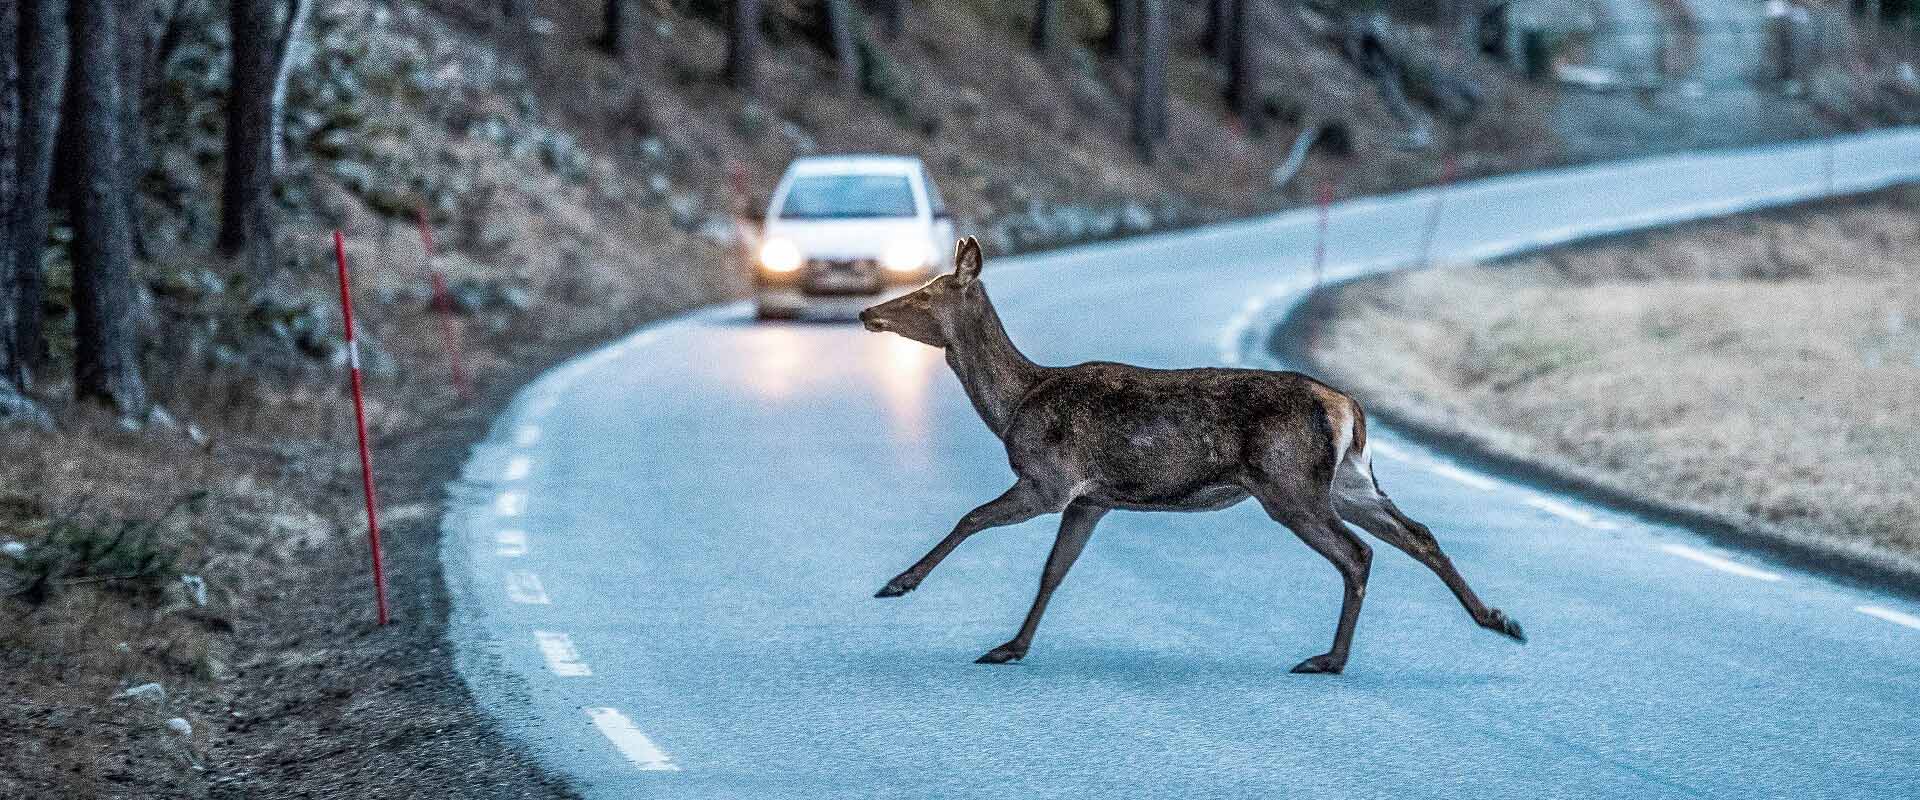 Roadkill vermeiden - Ein Hirsch flieht vor einem Auto auf der Landstraße